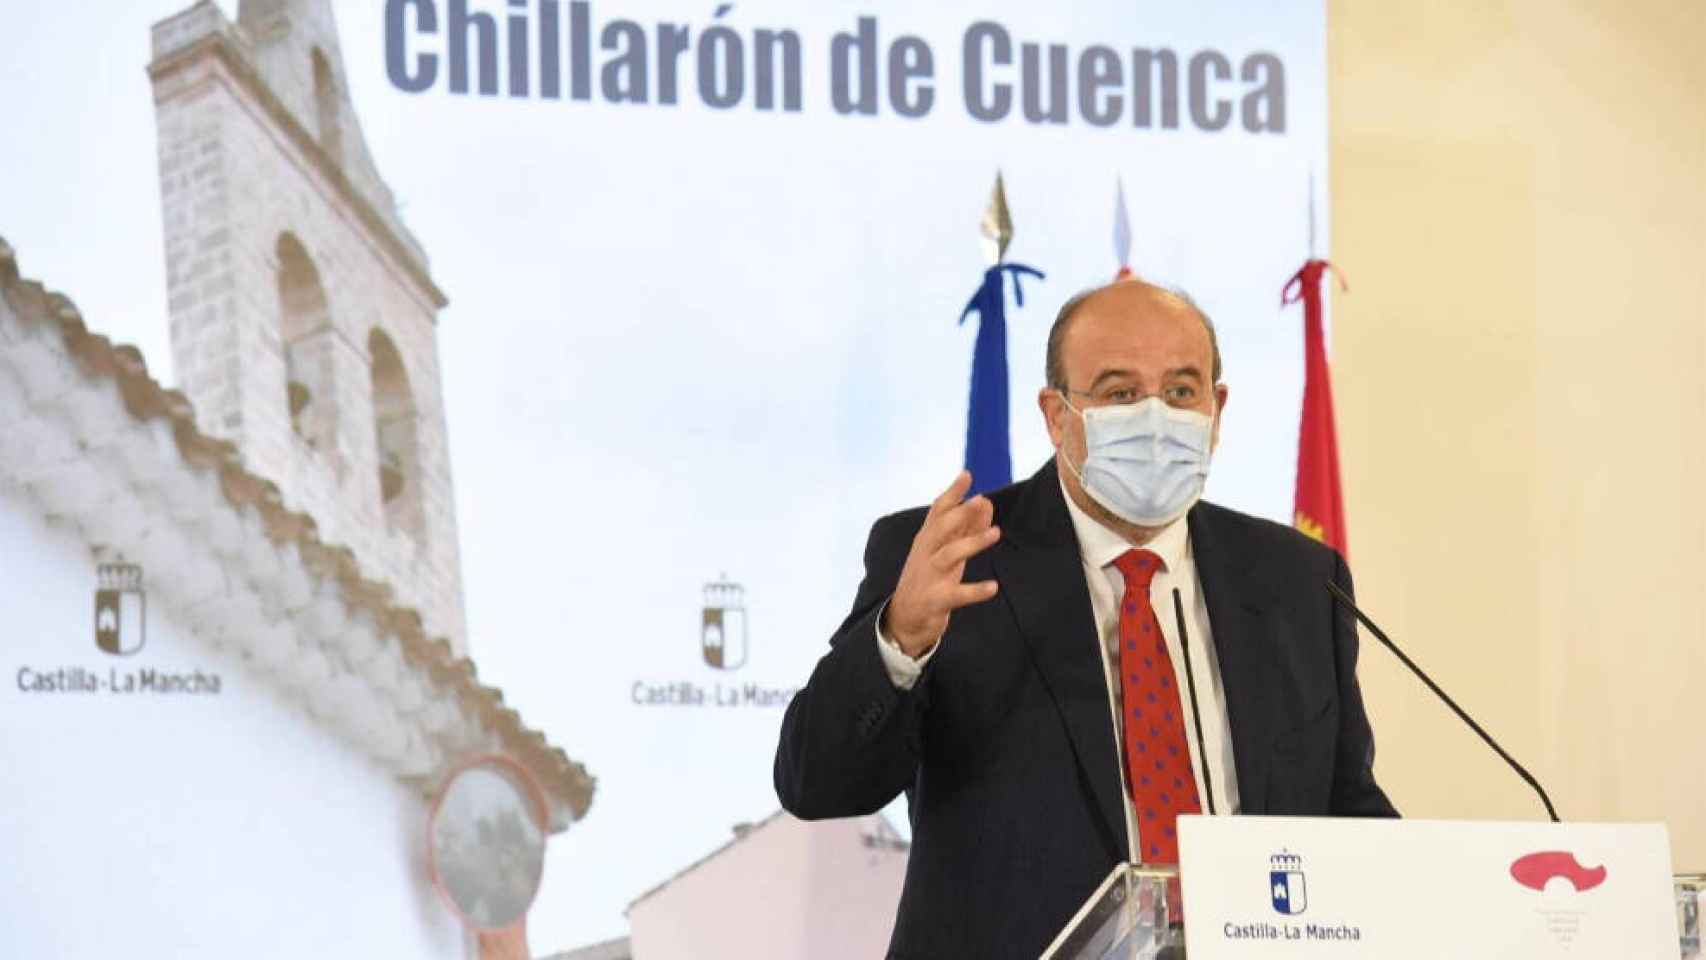 José Luis Martínez Guijarro, vicepresidente de Castilla-La Mancha, este lunes en la localidad conquense de Chillarón